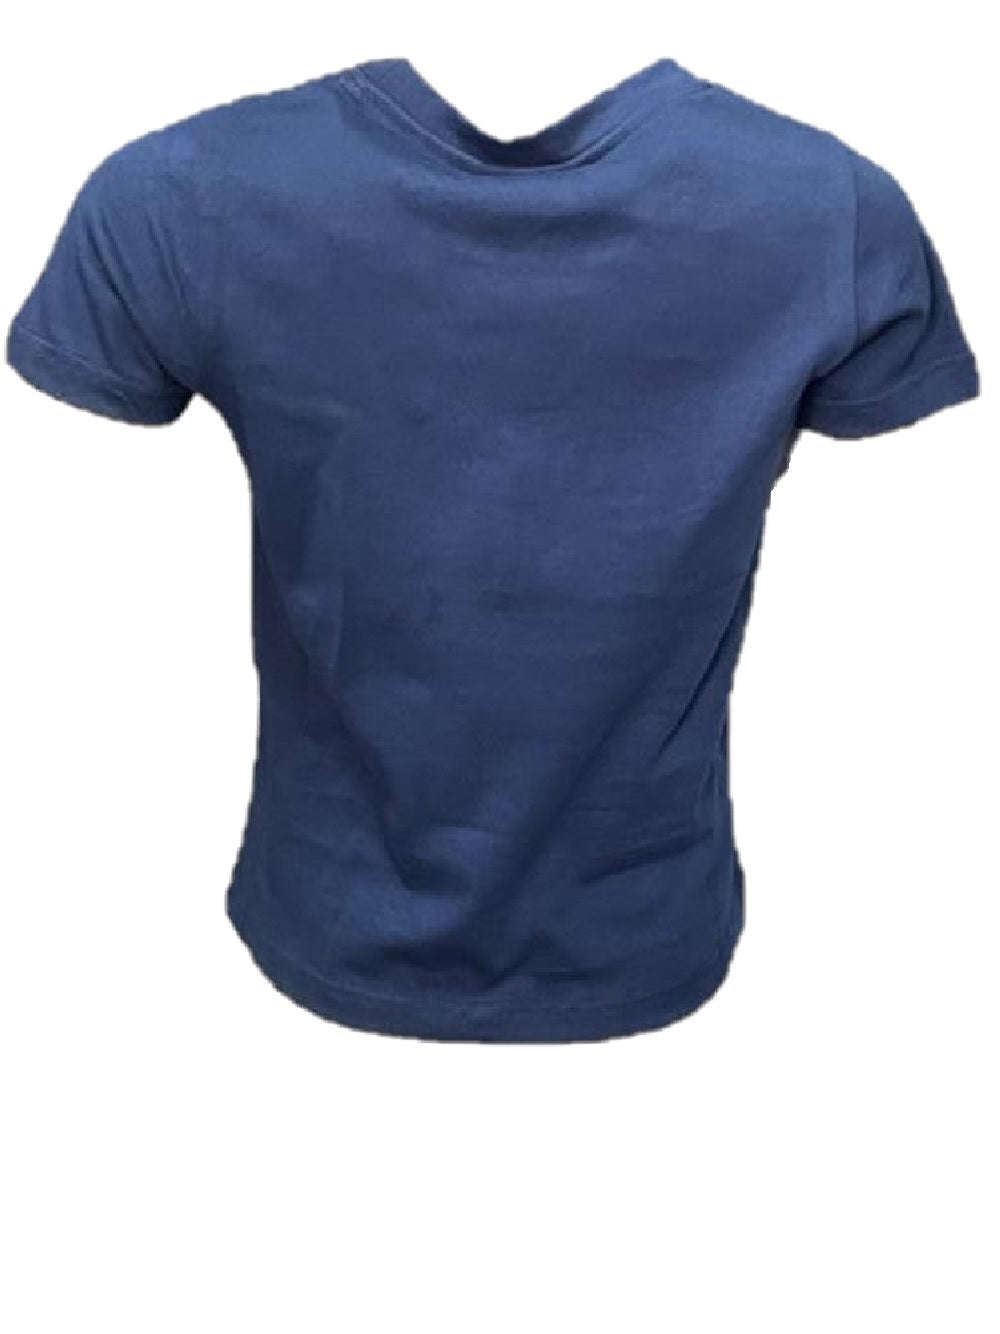 T-Shirt Gaelle modello 2746M0756 BLU con logo al petto in strass.